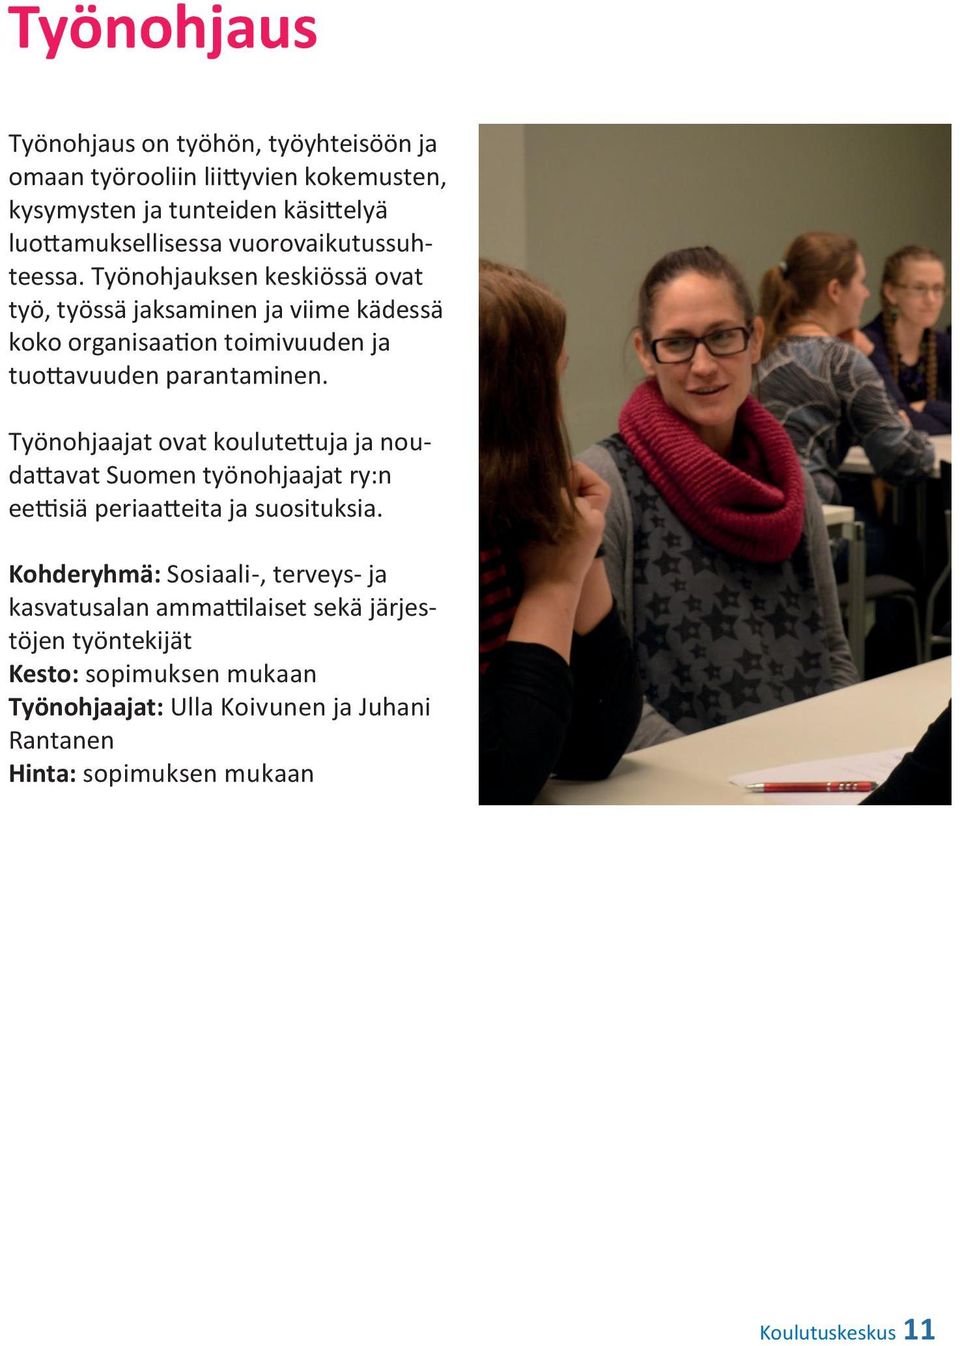 Työnohjaajat ovat koulutettuja ja noudattavat Suomen työnohjaajat ry:n eettisiä periaatteita ja suosituksia.